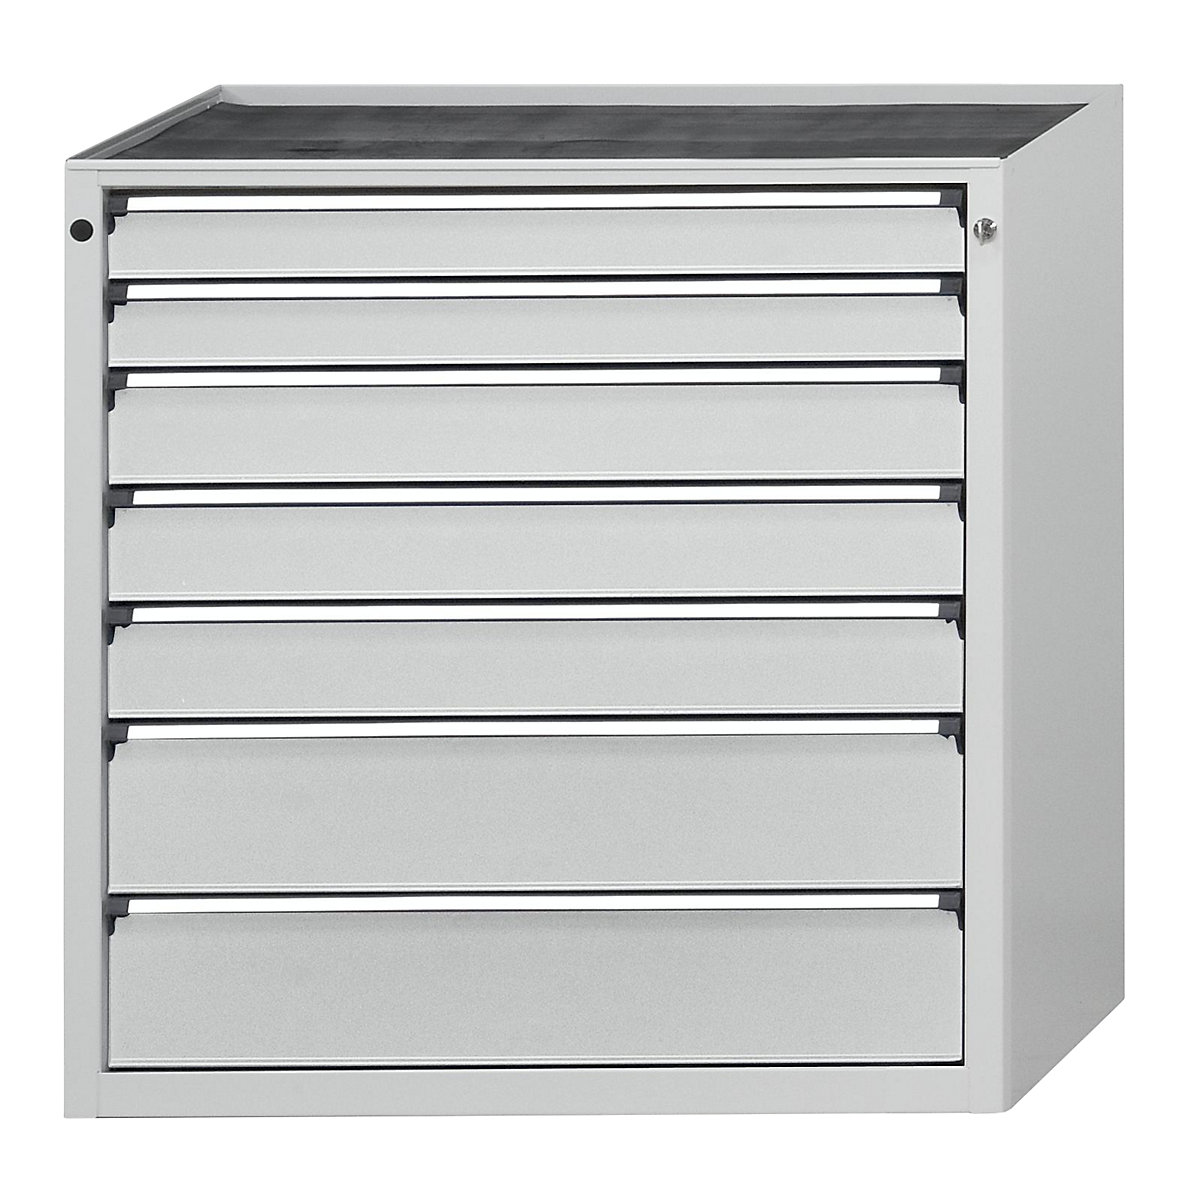 Armoire à tiroirs – ANKE, l x p 910 x 675 mm, charge max. tiroirs 200 kg, 7 tiroirs, hauteur 980 mm, façade gris clair-6